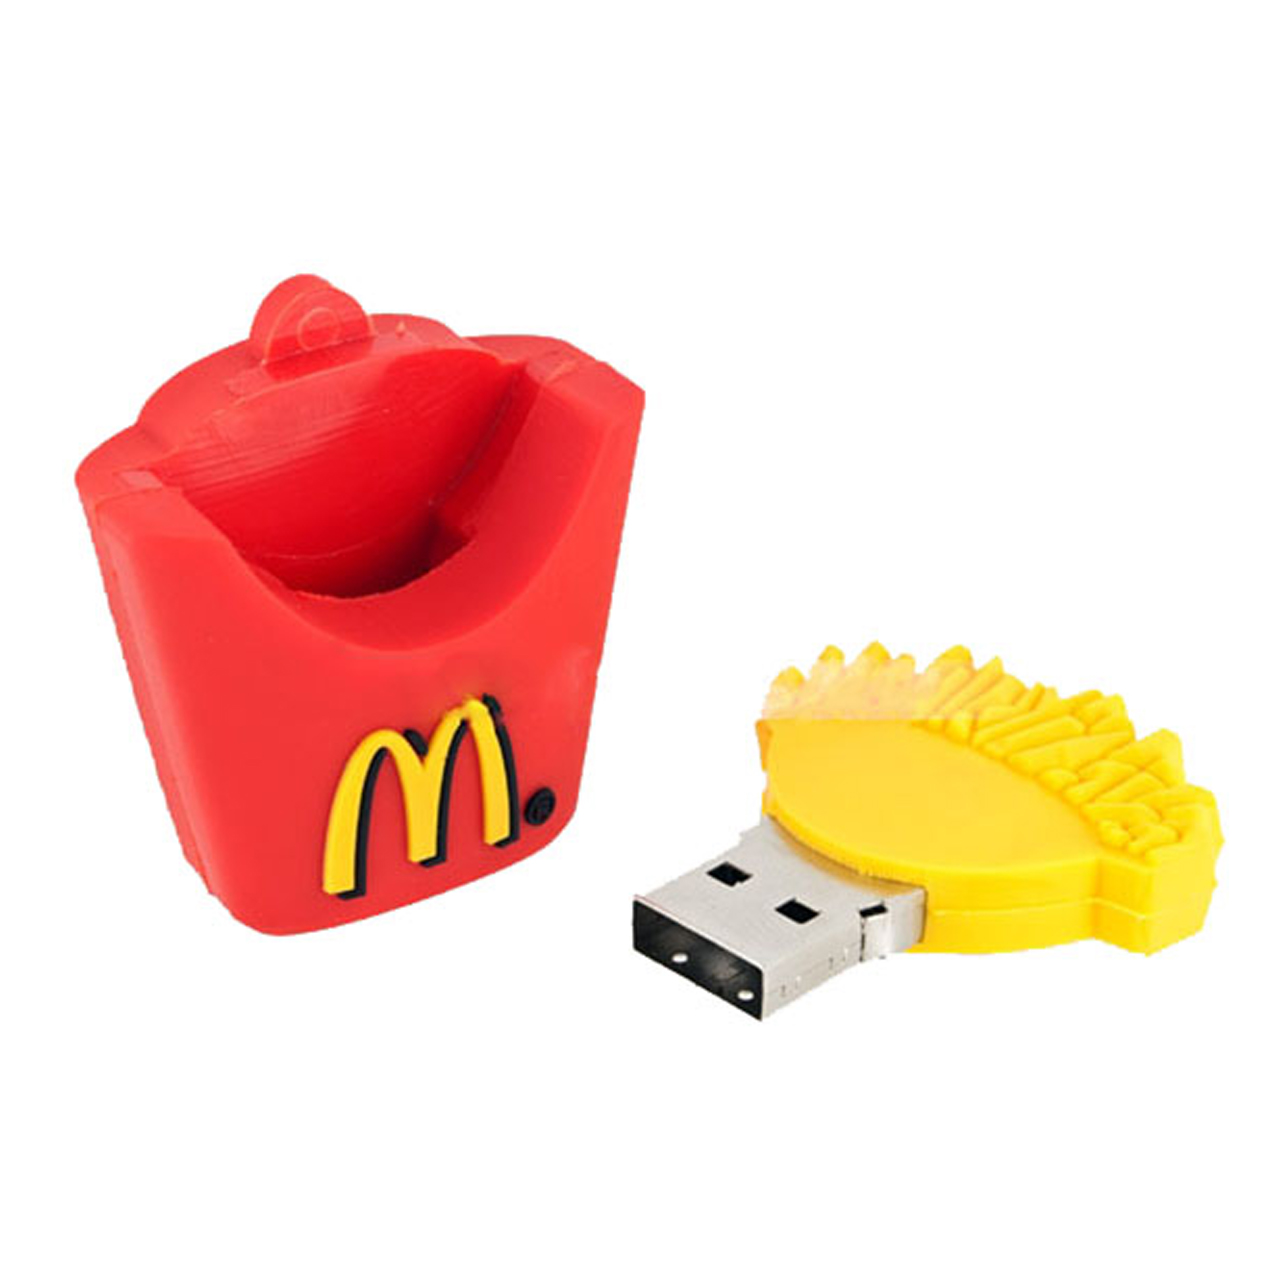 فلش مموری دایا دیتا طرح McDonalds مدل PF1059-USB3 ظرفیت 32 گیگابایت